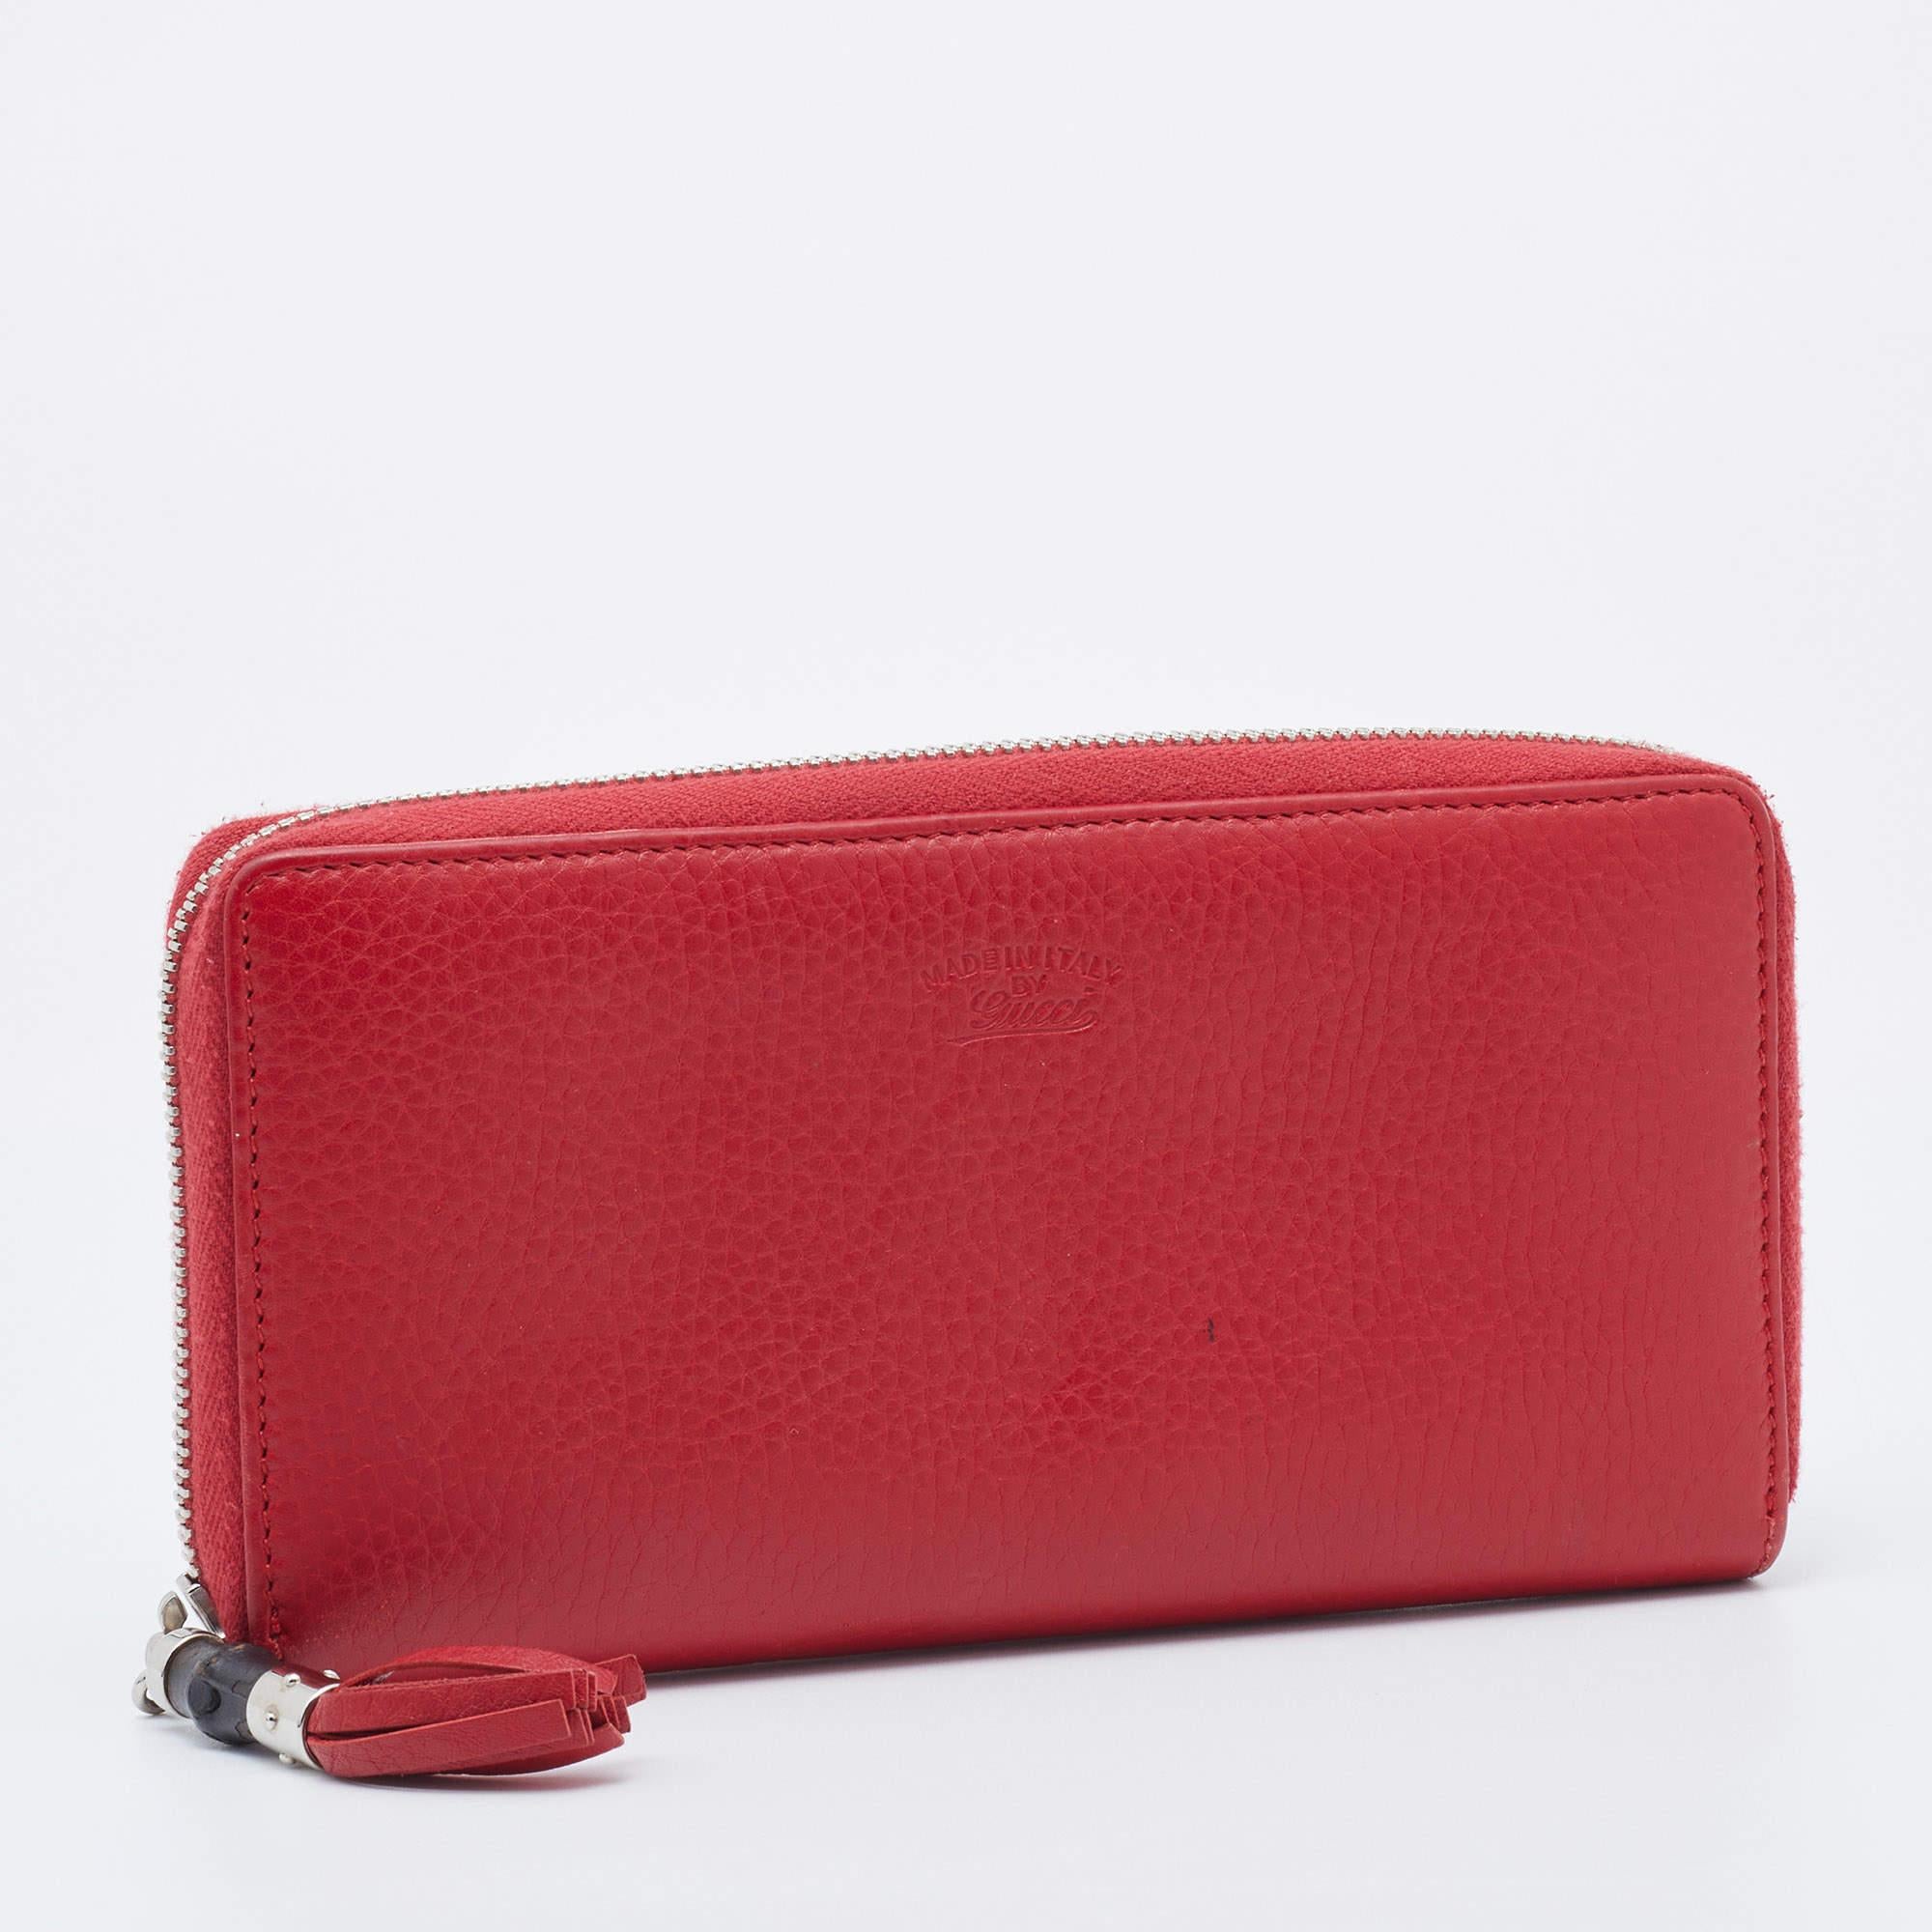 Mit dieser minimalistisch gestalteten Gucci-Brieftasche bleiben Sie stilvoll und schick. Sie ist in einem Rotton gehalten, aus Leder gefertigt und mit silberfarbenen Akzenten verziert. Der Reißverschluss an der Oberseite ist mit einem